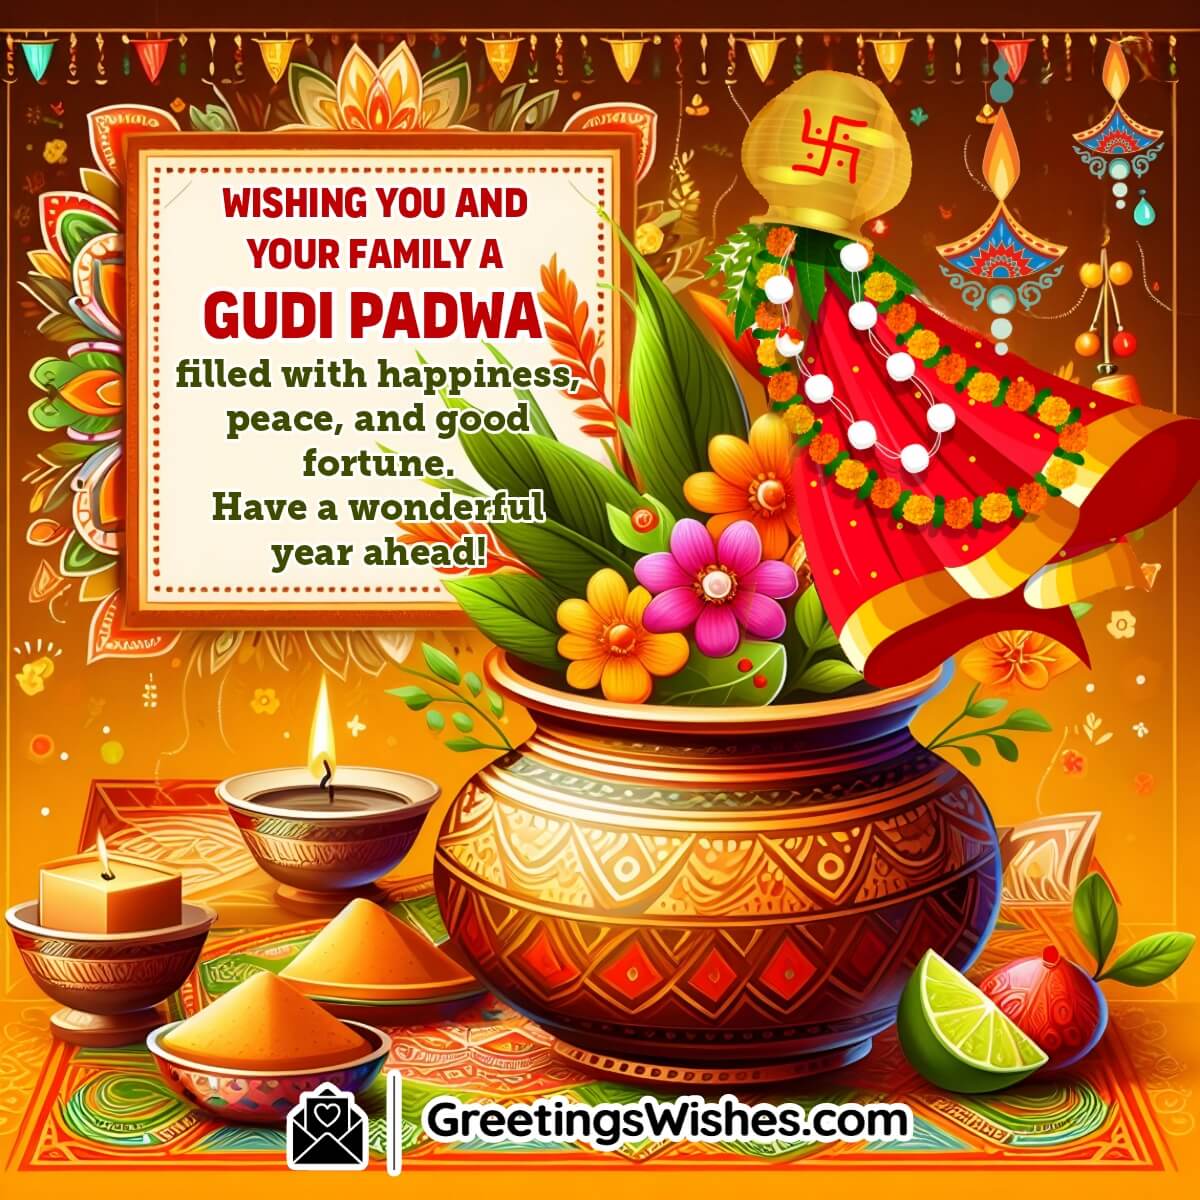 Wishing Happy Gudi Padwa